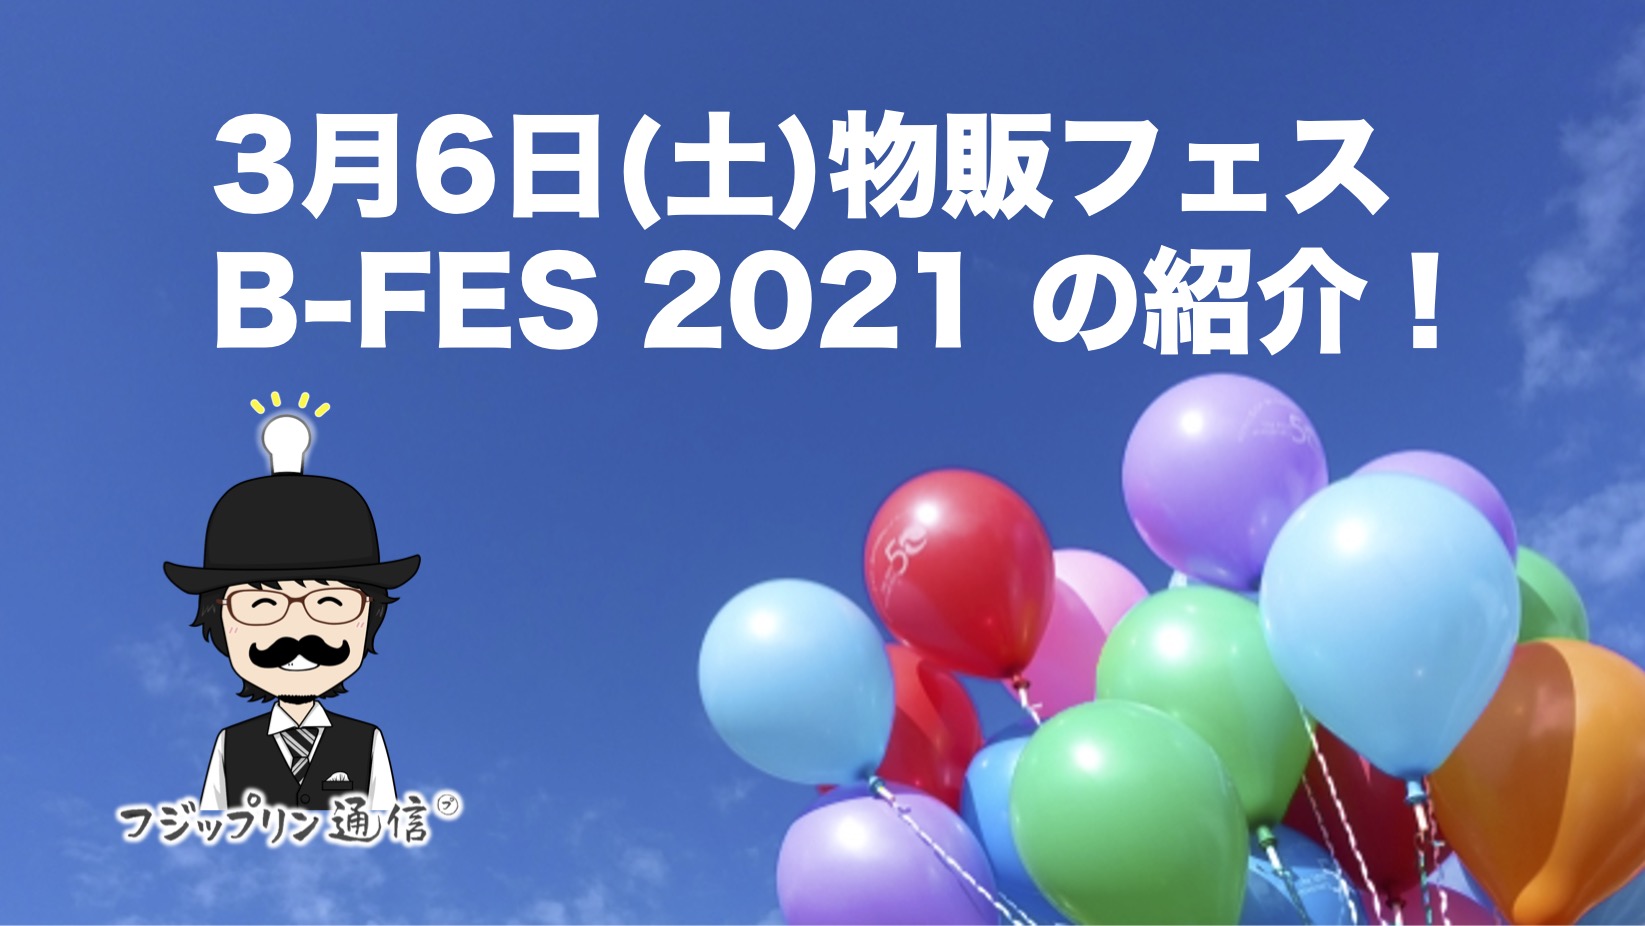 3月6日(土)物販フェス B-FES 2021 の紹介！